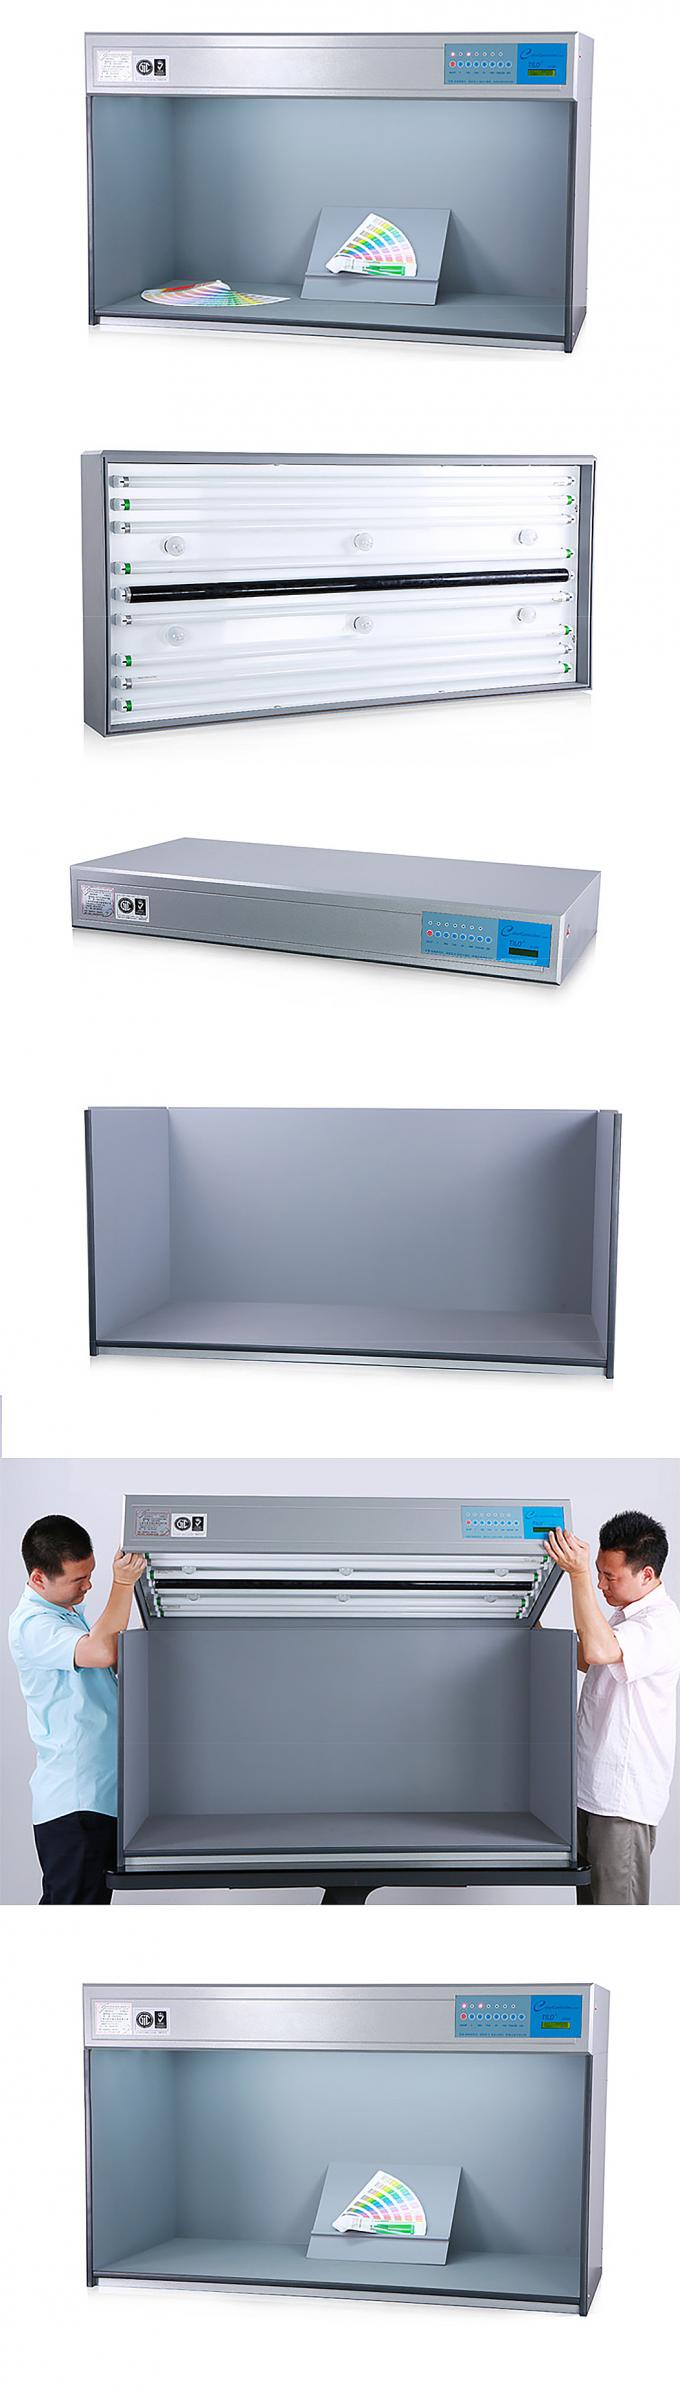 جعبه نور TILO با اندازه بزرگ 120 سانتی متر کابینت ارزیابی رنگ با D65 * 2 / TL84 * 2 / U35 * 2 / UV * 1 / F * 4 (110V) مدل P120